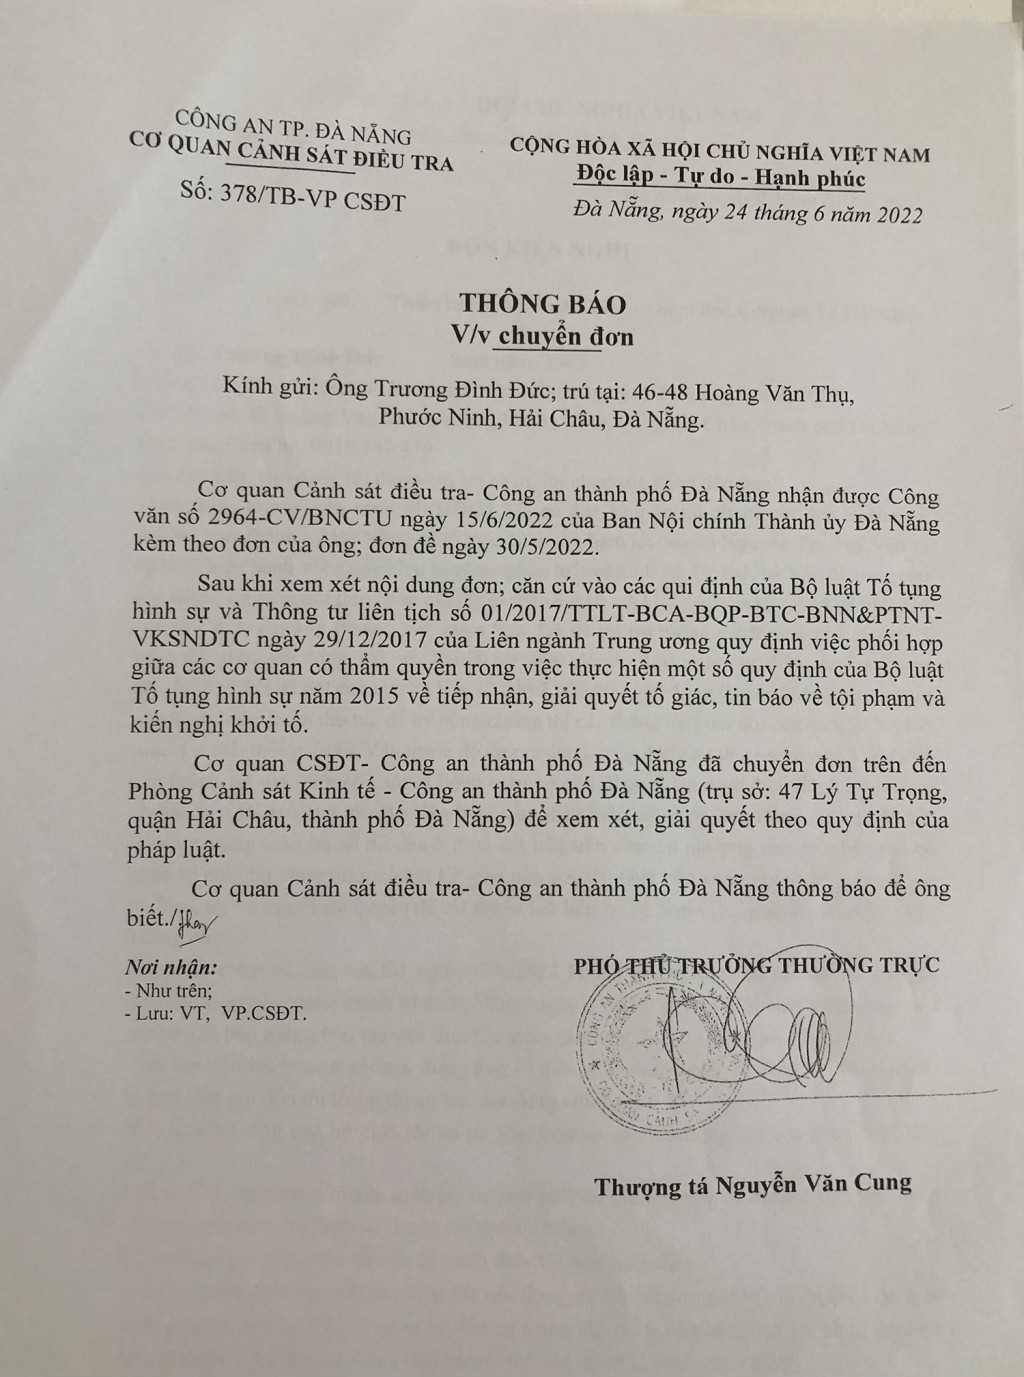 Thông báo ngày 24/6/2022 của Cơ quan CSĐT Công an TP Đà Nẵng, đã chuyển đơn tố giác tội phạm của ông Đức đến Phòng Cảnh sát Kinh tế Công an TP Đà Nẵng để xem xét, giải quyết theo quy định của pháp luật